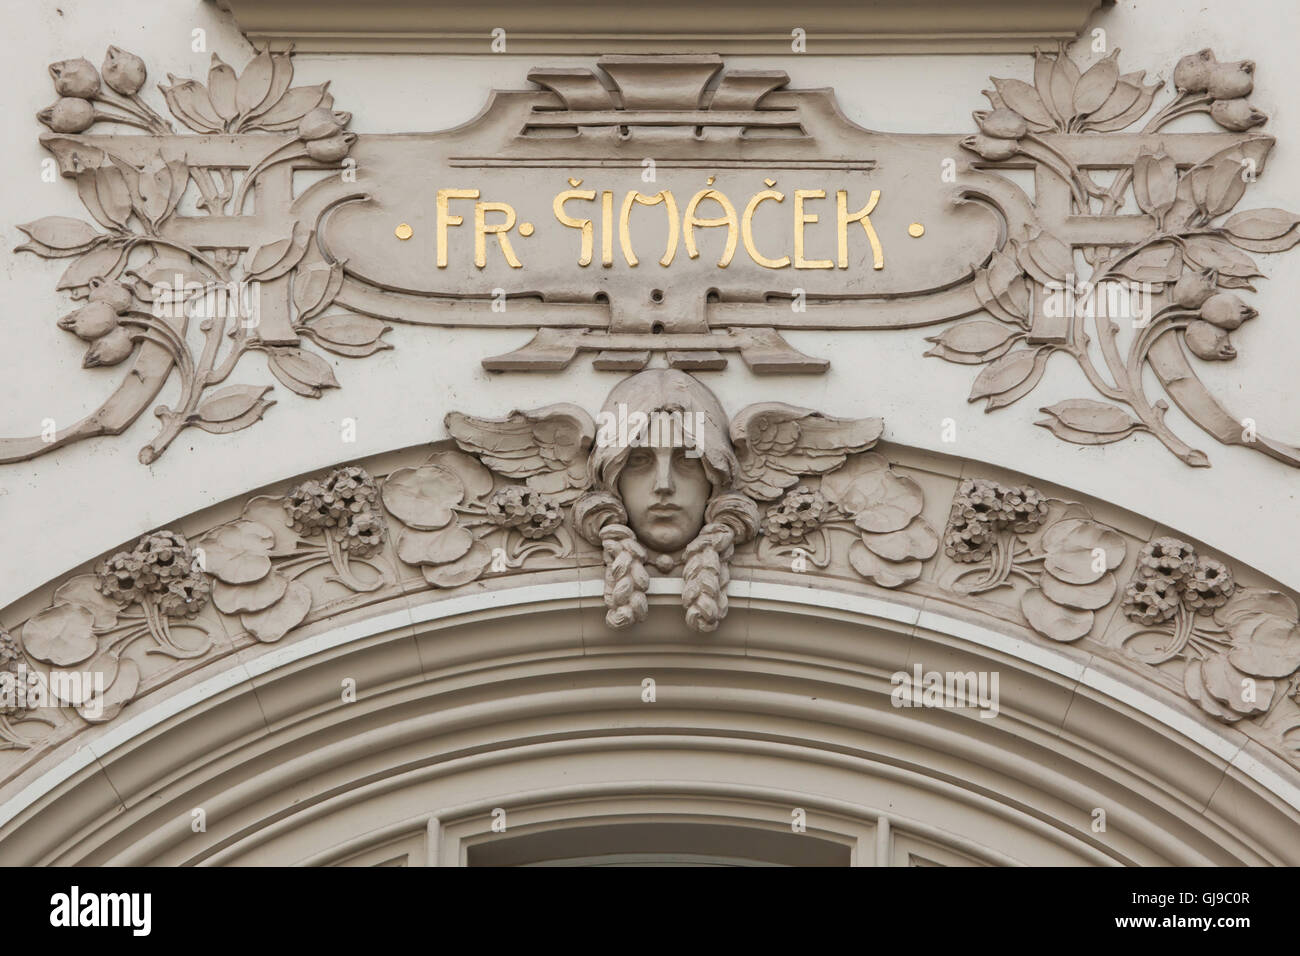 Jugendstil-Maskaron am Umsatz Haus in Parizska Straße in der Altstadt in Prag, Tschechien. Die Umsatz-Haus, entworfen von tschechischen Architekten Jan Vejrych 1902-1904 erbaut wurde. Das Detail zeigt eine extrem schlechte Qualität der Restaurierungsarbeiten. Stockfoto